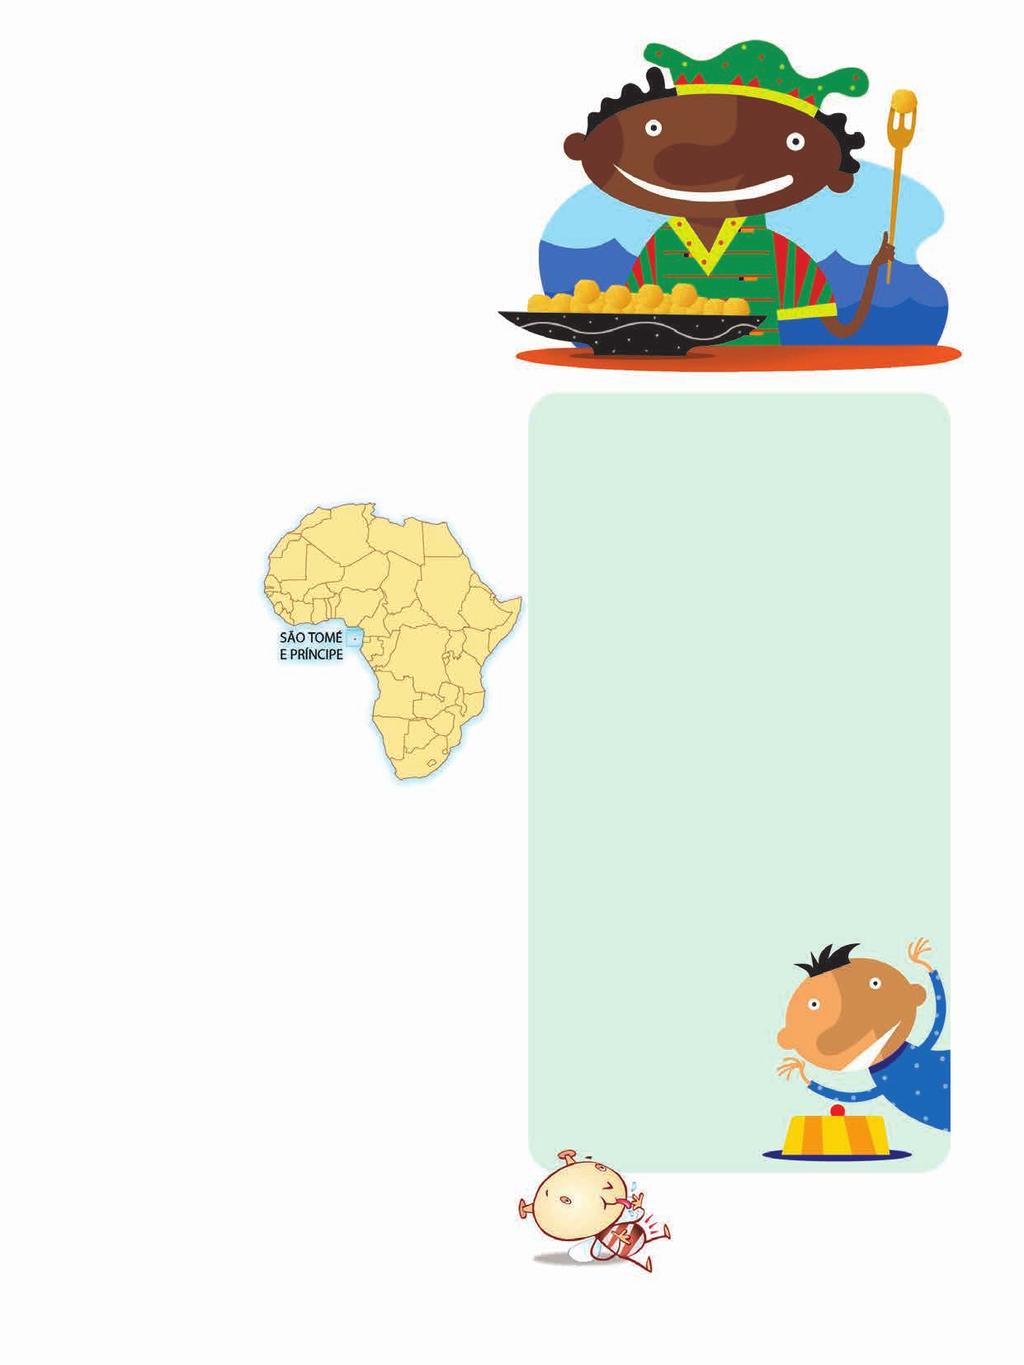 Receita africana salpicada de ciência Você já ouviu falar de São Tomé e Príncipe? Trata-se de um arquipélago africano tão pequeno que é até difícil de acreditar que seja um país.